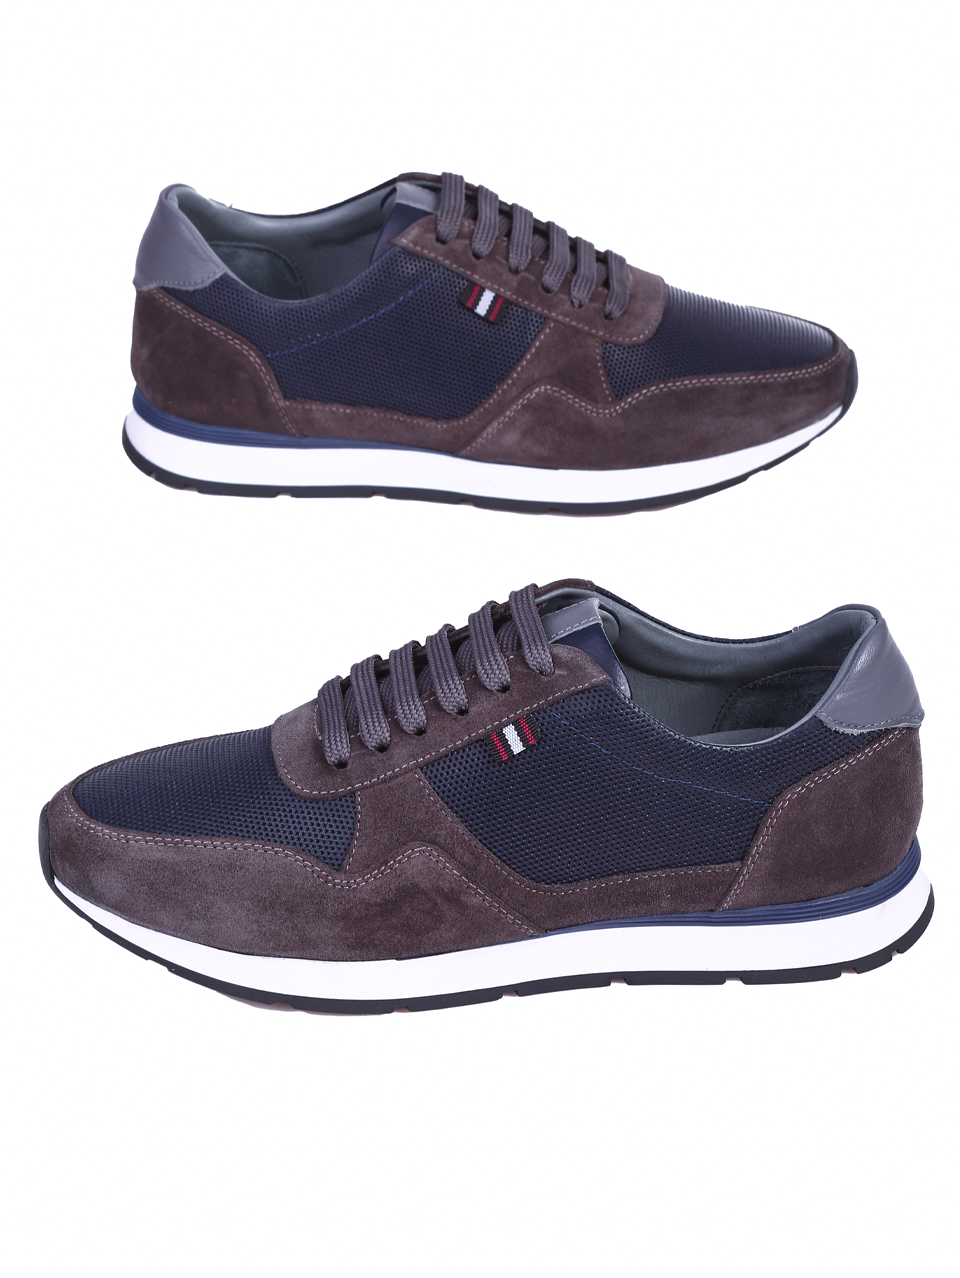 Ежедневни мъжки обувки от естествена кожа 7AT-24363 grey/navy